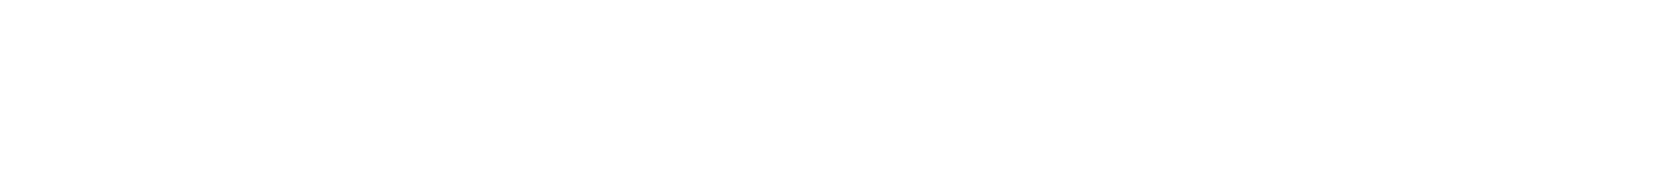 AF-S Fisheye NIKKOR 8-15mm f/3.5-4.5E ED